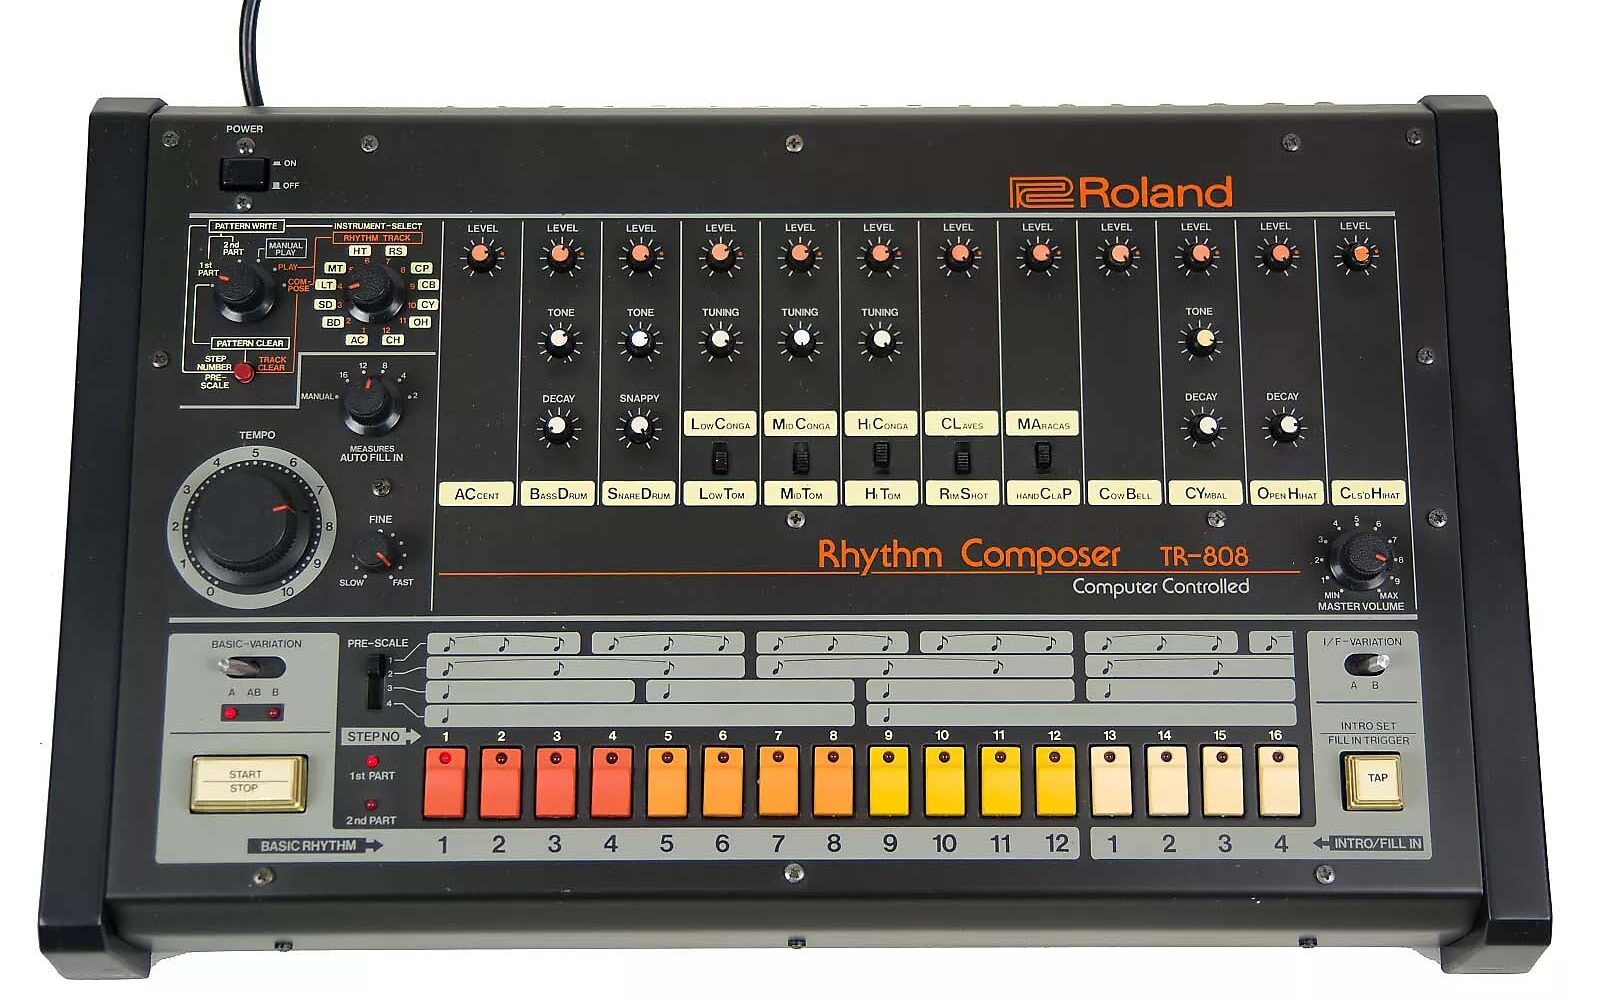 O lendário Roland TR-808